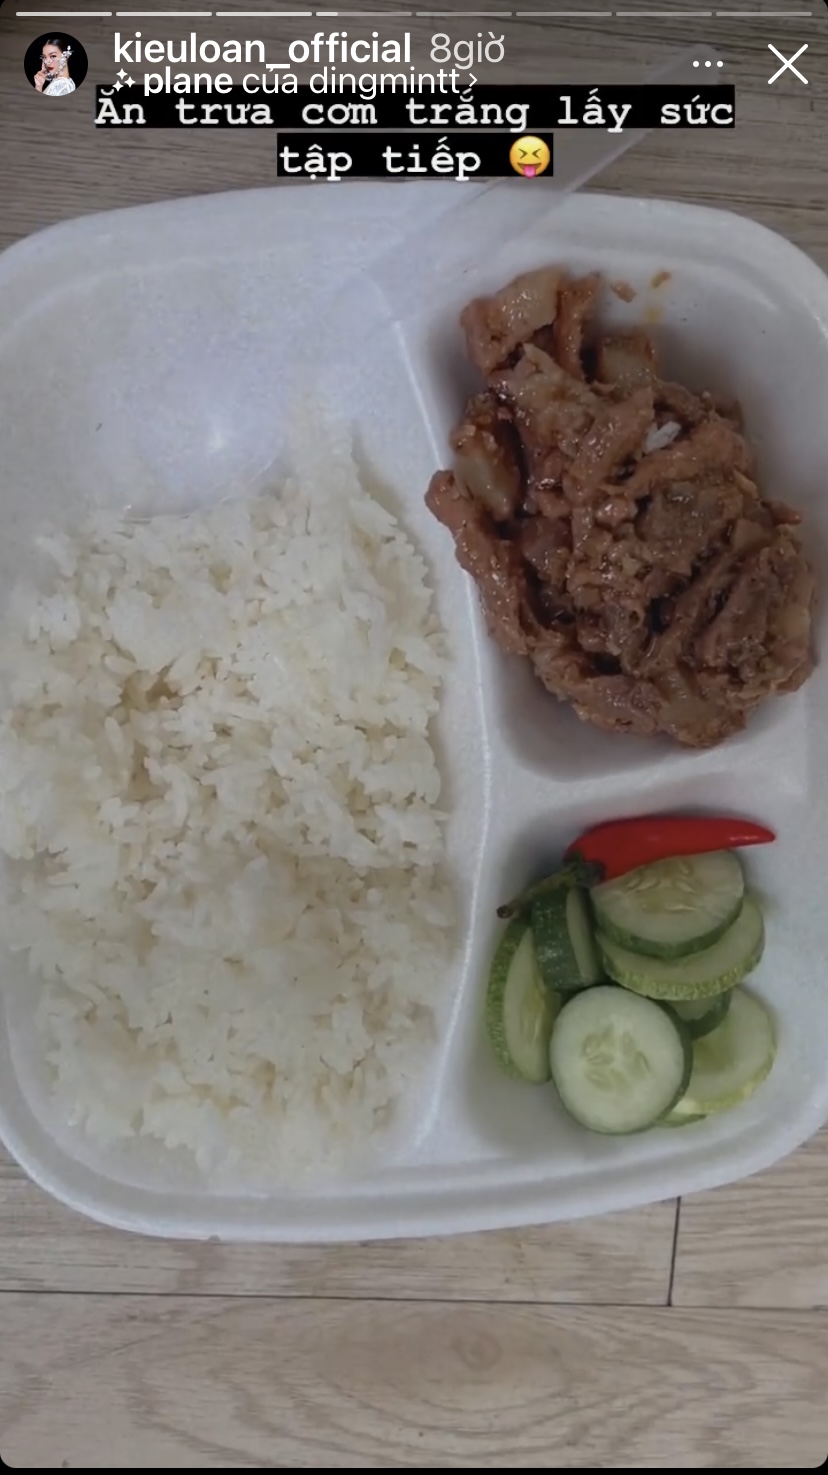 Còn đây là thực đơn bữa trưa với cơm trắng, thịt bò và vài miếng dưa leo của Kiều Loan.